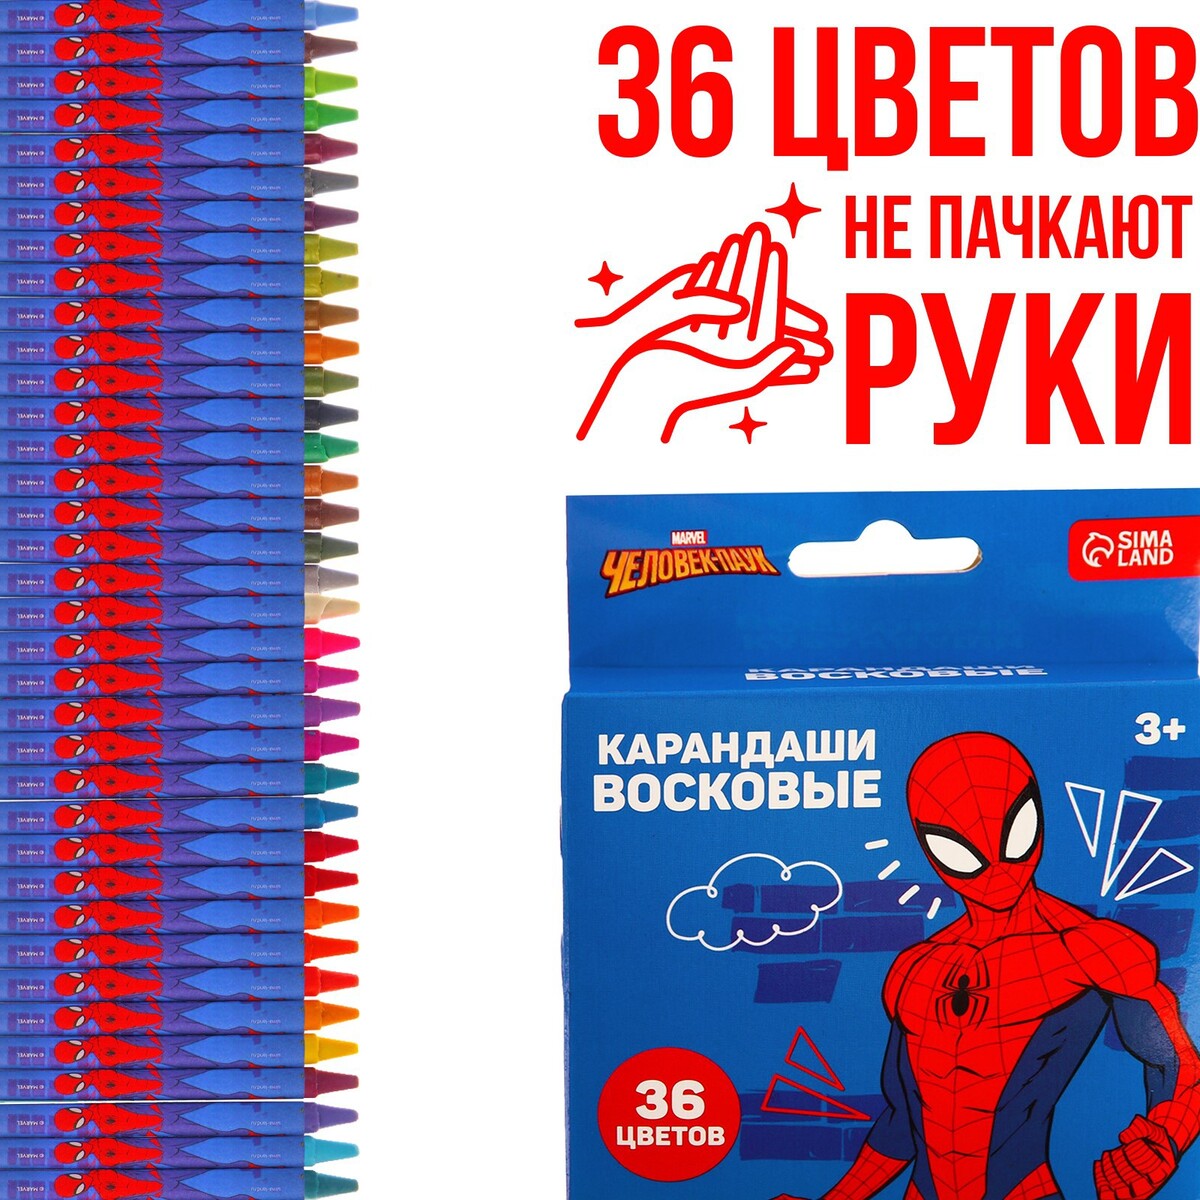 Восковые карандаши, набор 36 цветов, человек-паук человек сознание коммуникация интернет